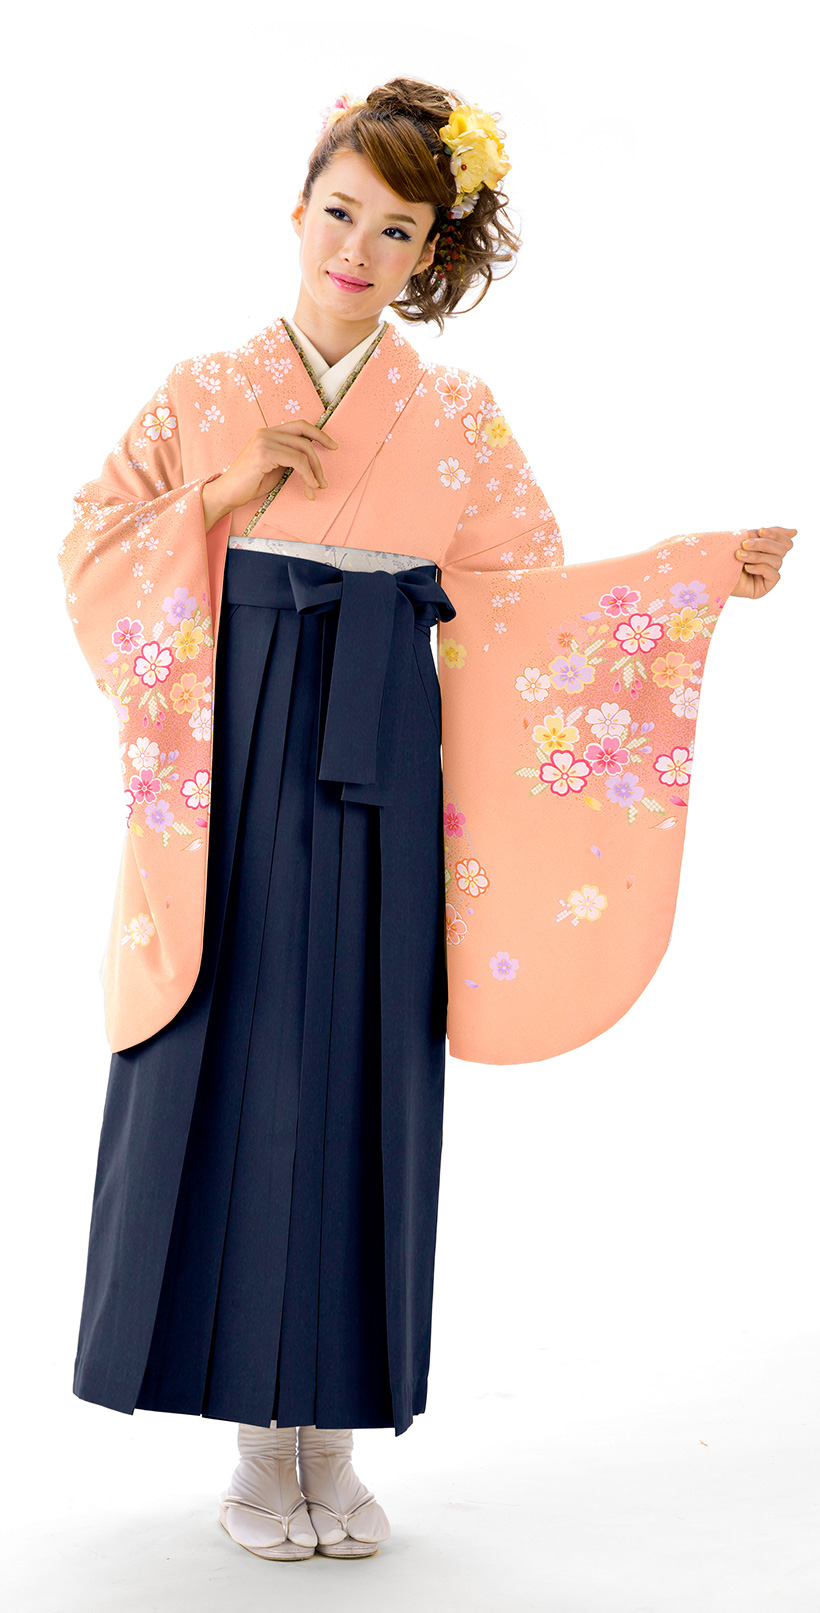 かわいらしいオレンジの袴スタイル